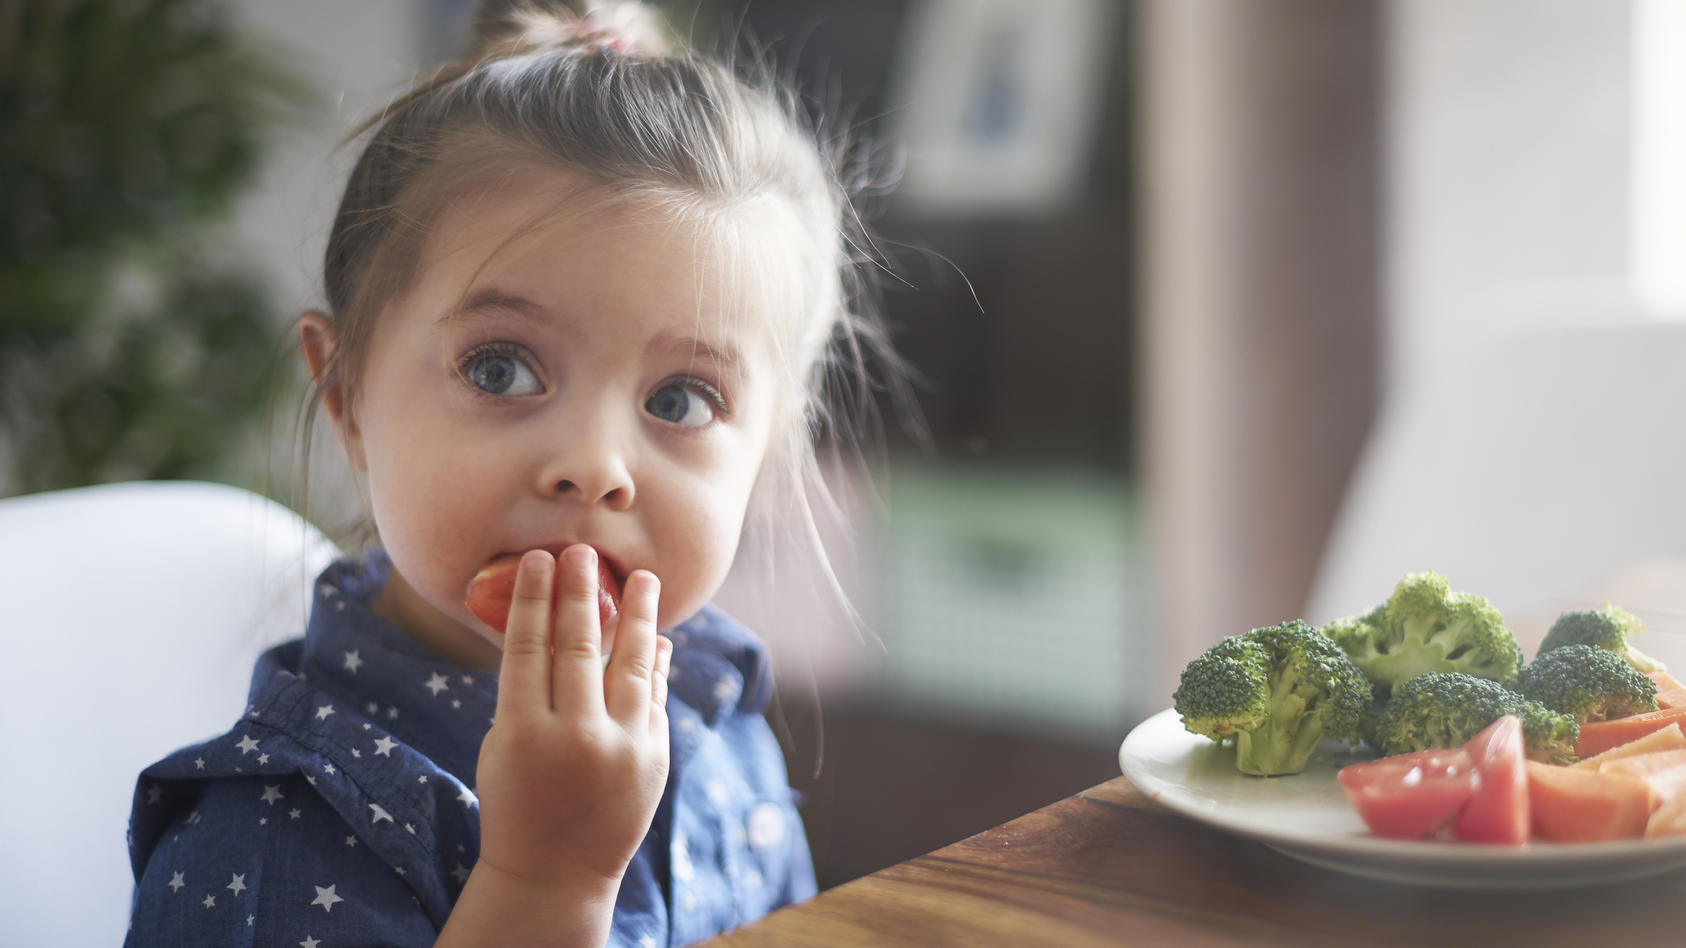 Kanadische Forscher haben untersucht, ob sich eine vegetarischen Ernährungsweise auf das kindliche Wachstum auswirkt.